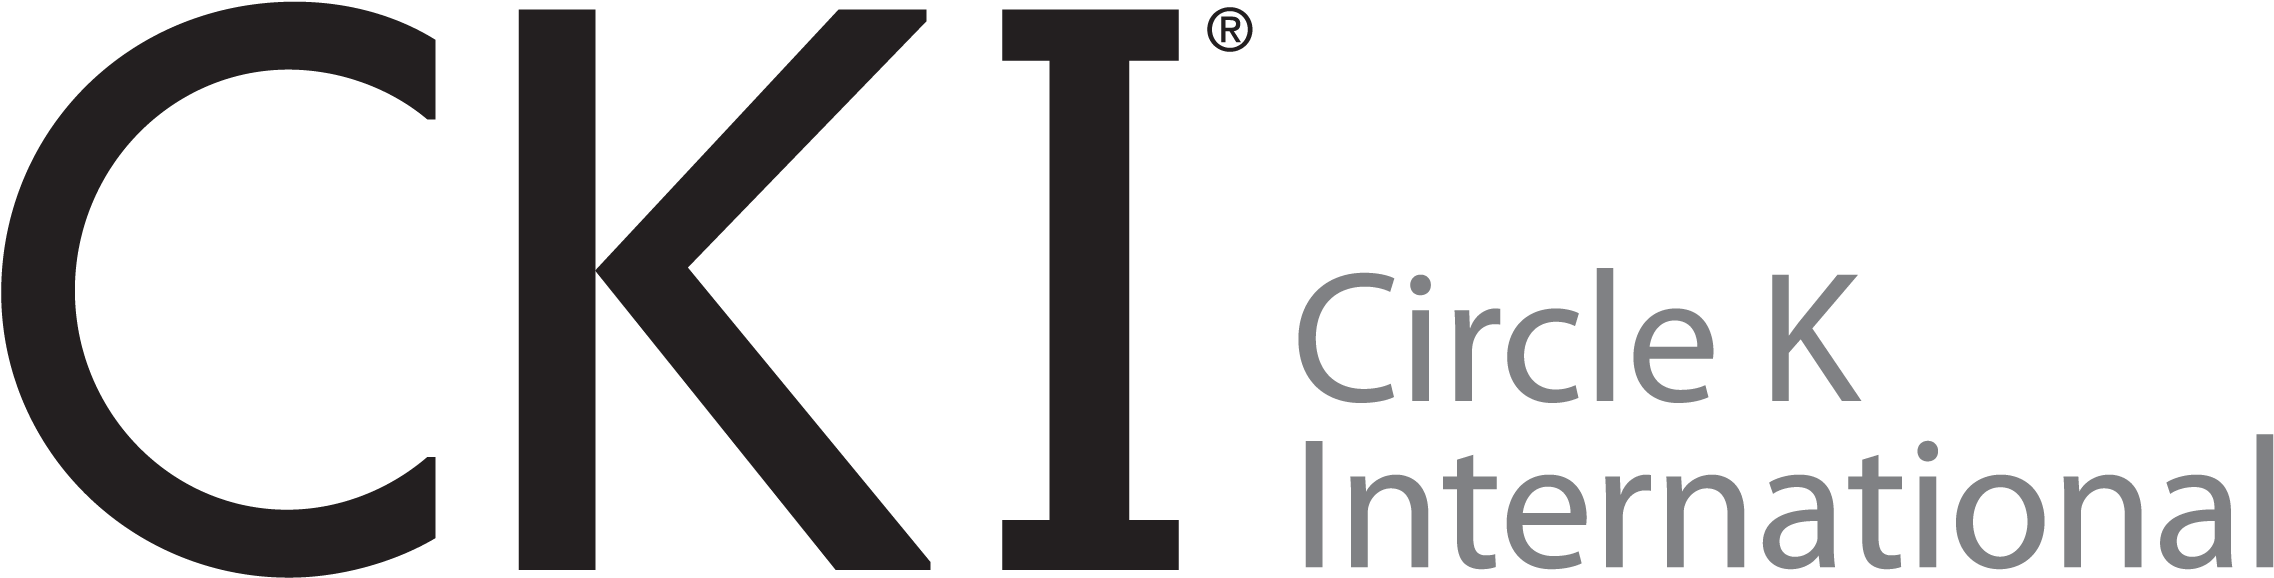 Cki - Circle K International Logo (2458x833)